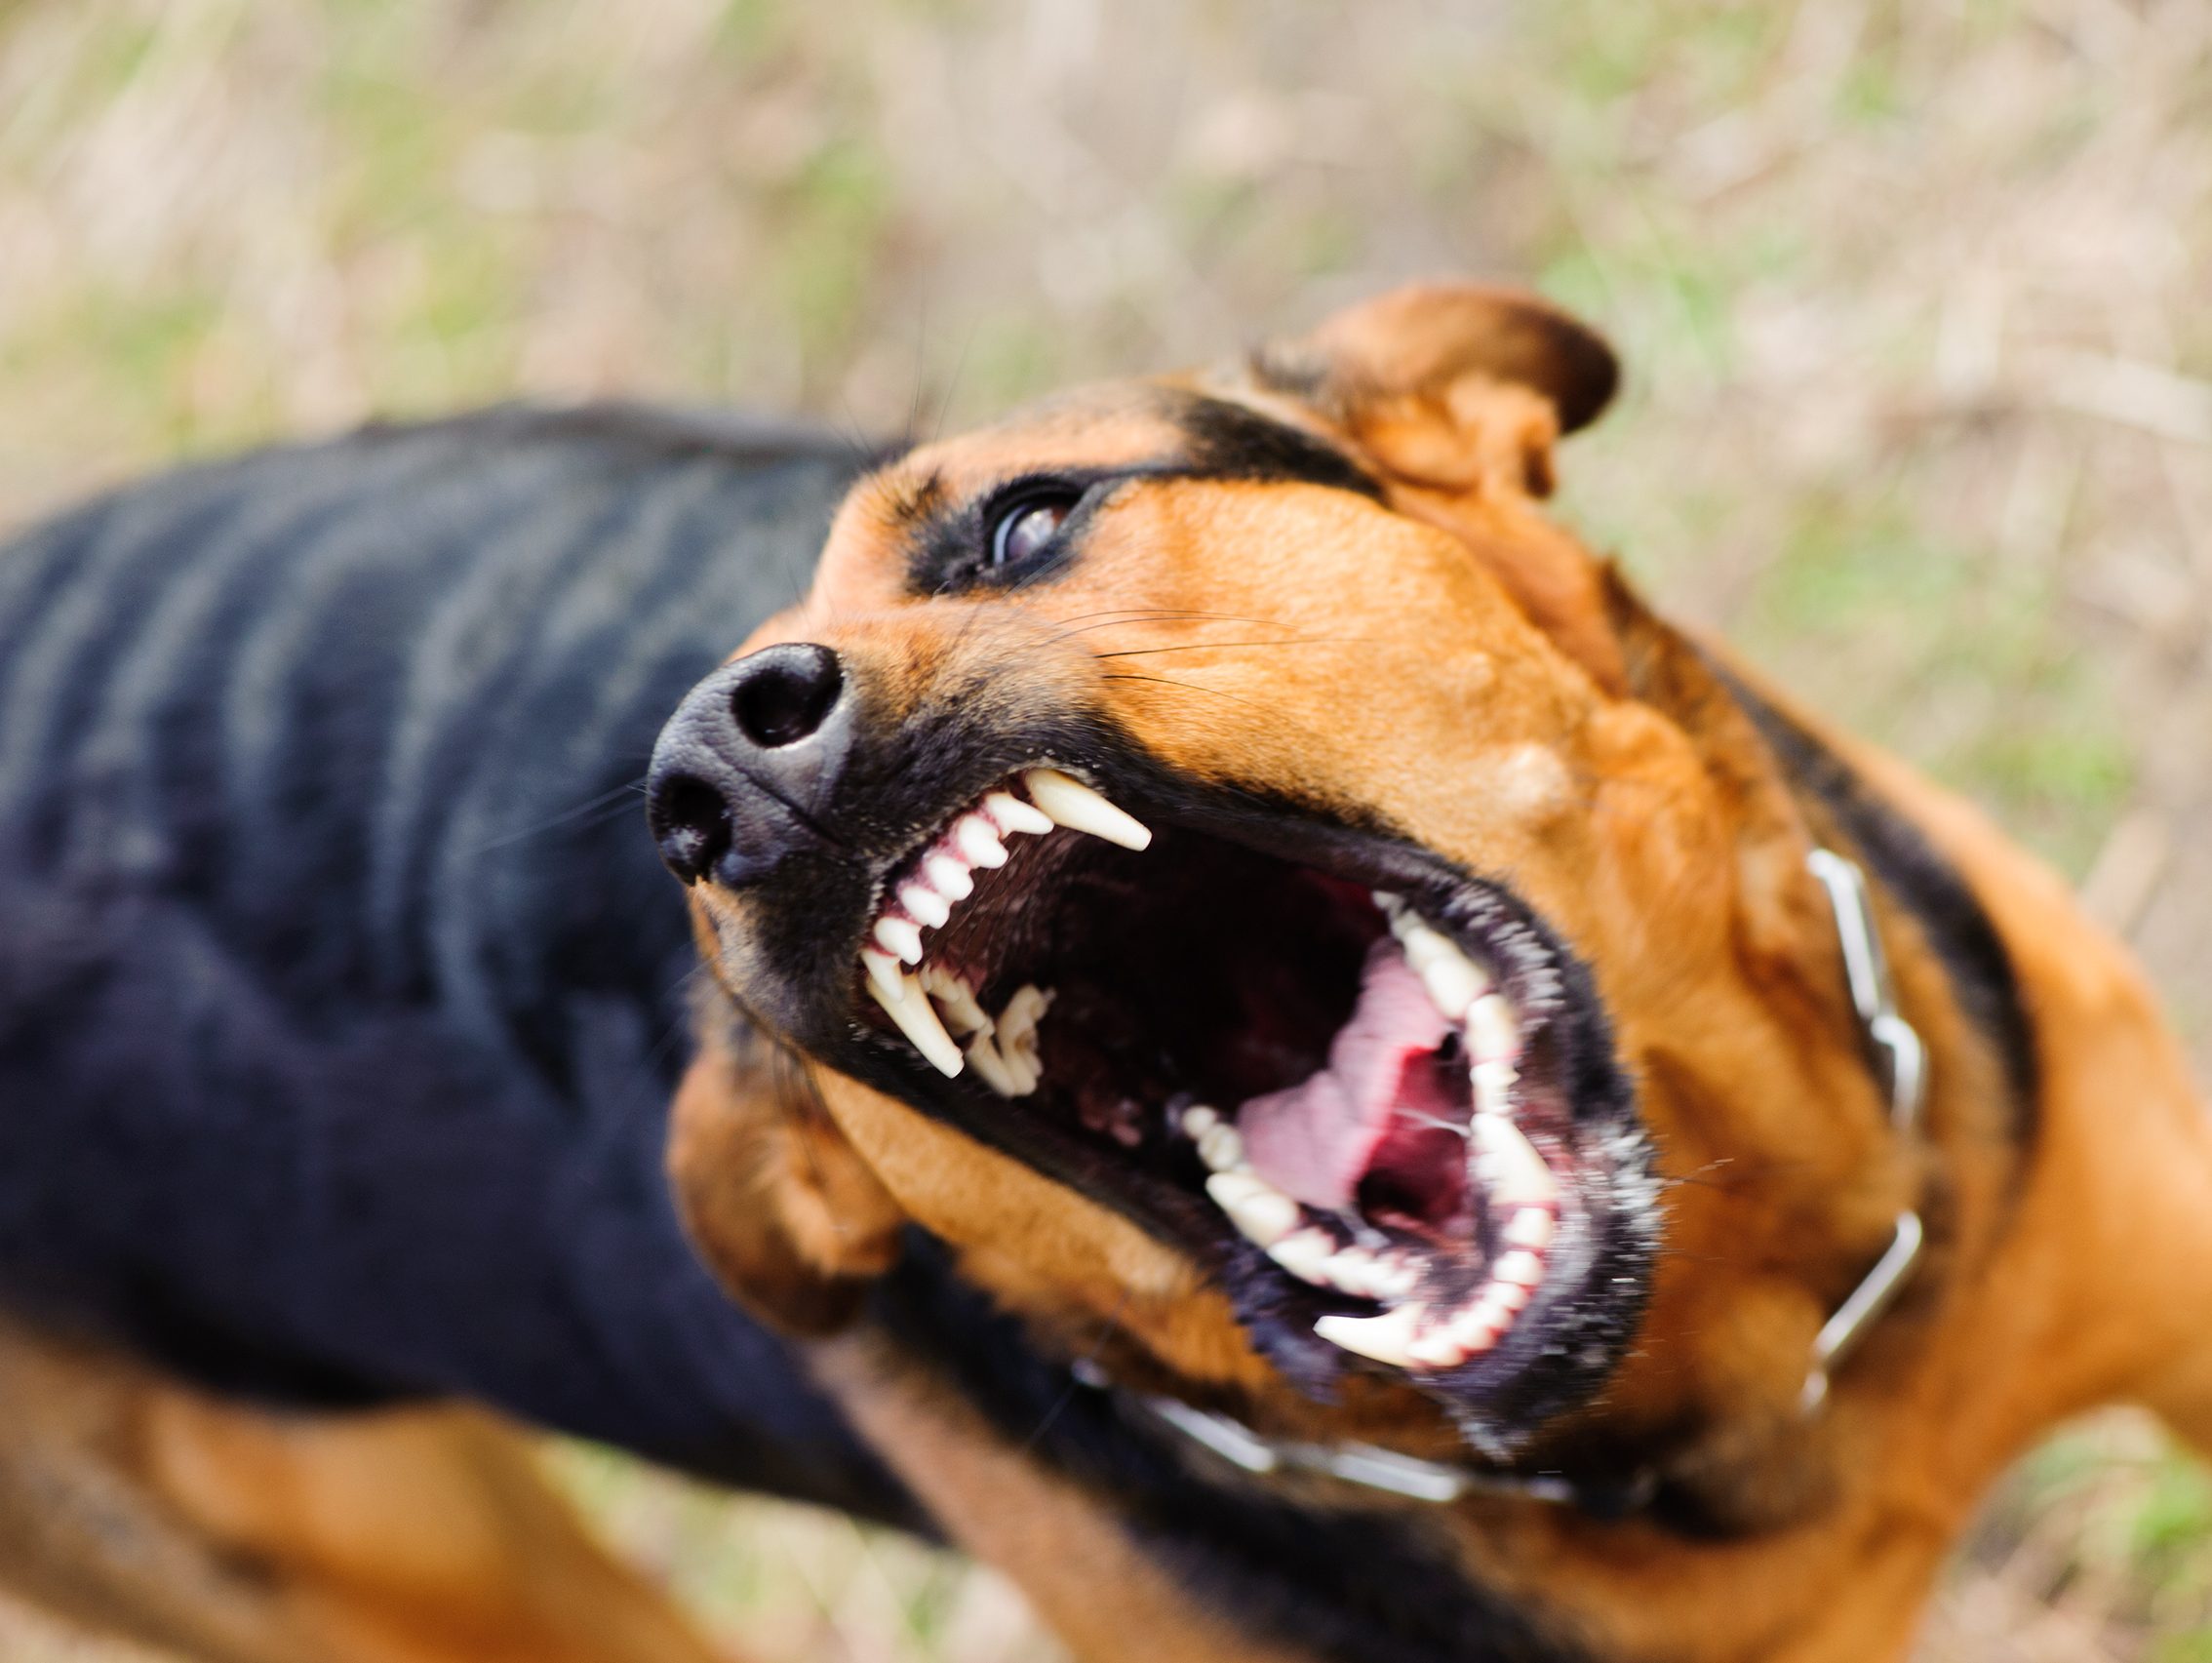 Ветеринарами-спеціалістами Свалявської районної лікарні ветеринарної медицини проводяться обстеження домашніх тварин у селі Неліпино, де днями було зафіксовано випадок сказу у собаки.